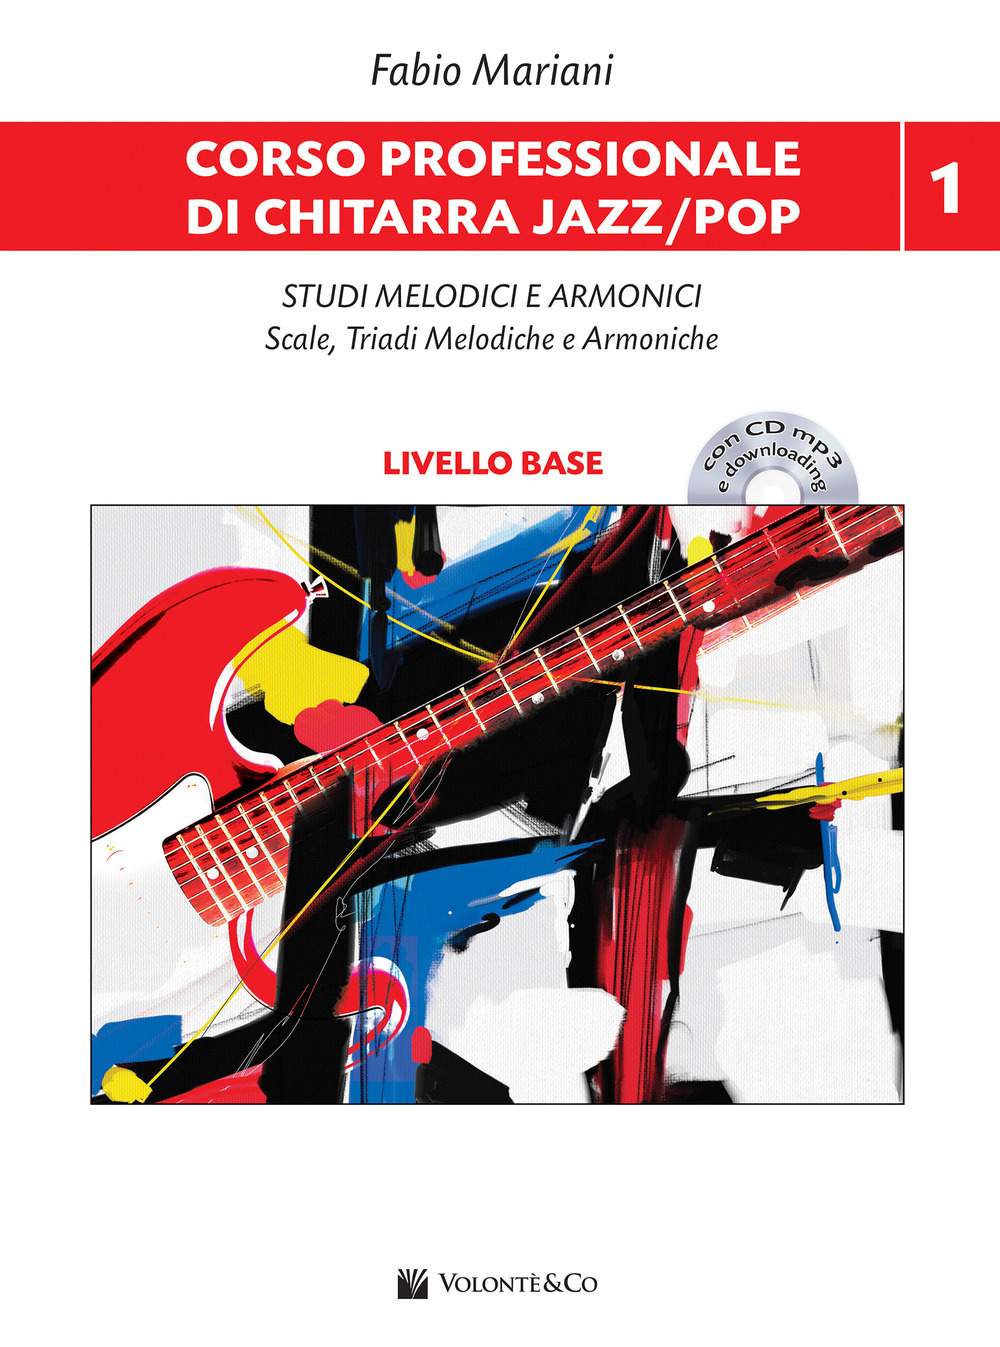 Libri Fabio Mariani - Corso Professionale Di Chitarra Jazz/Pop. Studi Melodici E Armonici Scale, Triadi Melodiche E Armoniche. Con CD-Audio. Con File Audio NUOVO SIGILLATO, EDIZIONE DEL 28/09/2018 SUBITO DISPONIBILE